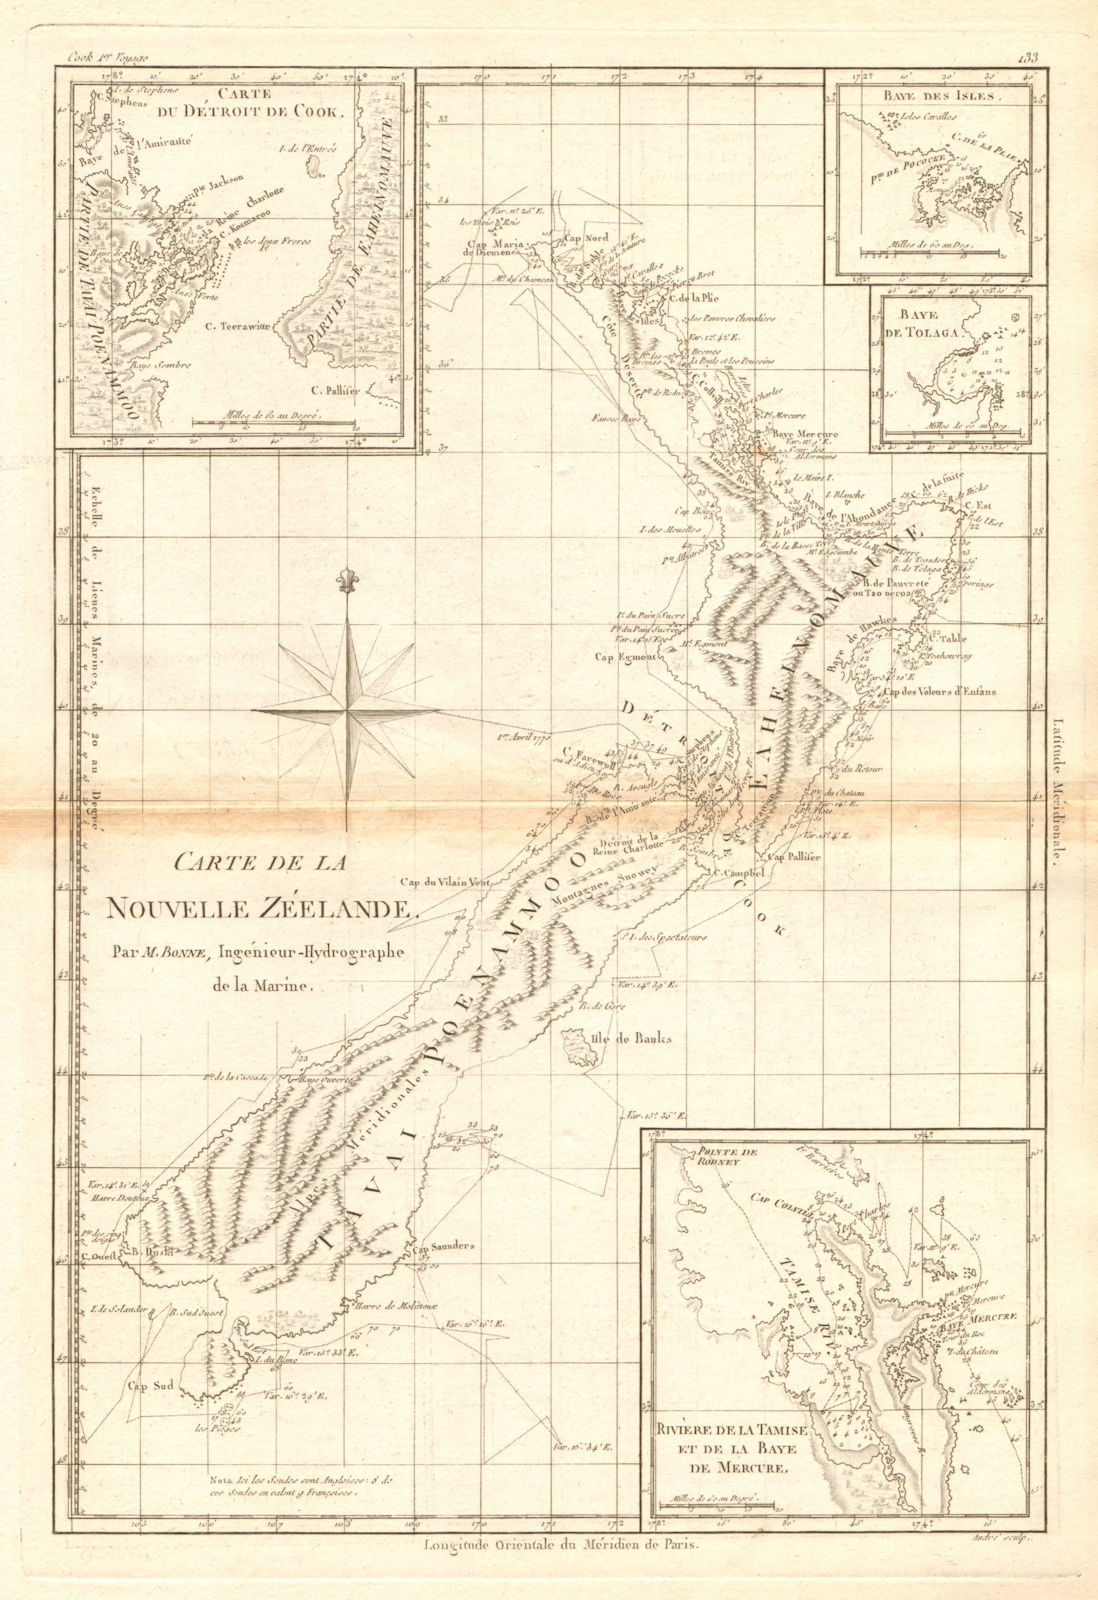 Carte de la Nouvelle Zéelande. New Zealand. Cook Strait. Thames. BONNE 1788 map